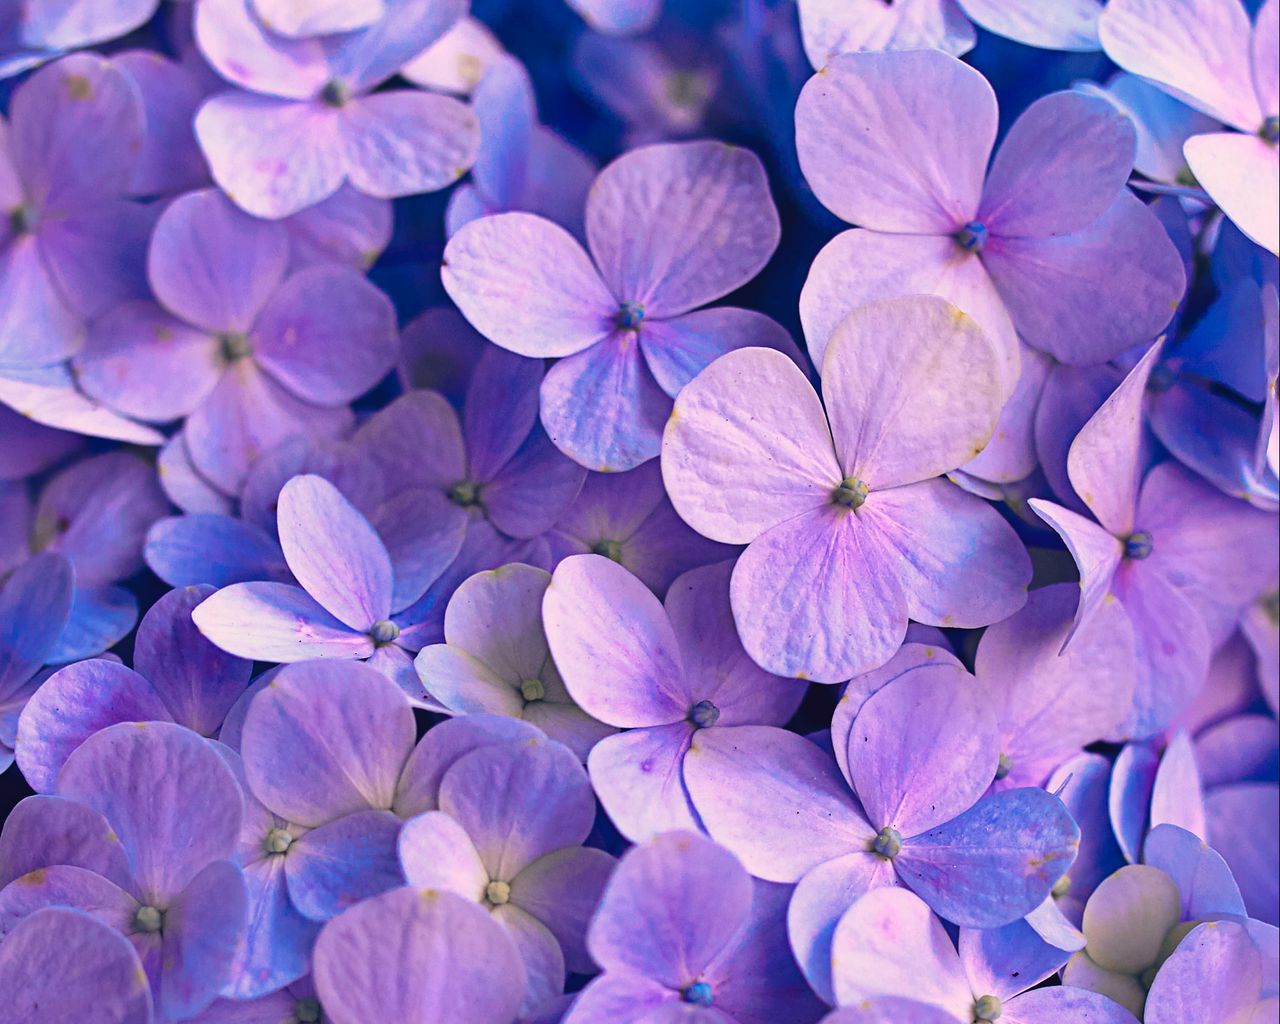 Download wallpaper 1280x1024 hydrangea, flowers, petals, purple standard  5:4 hd background